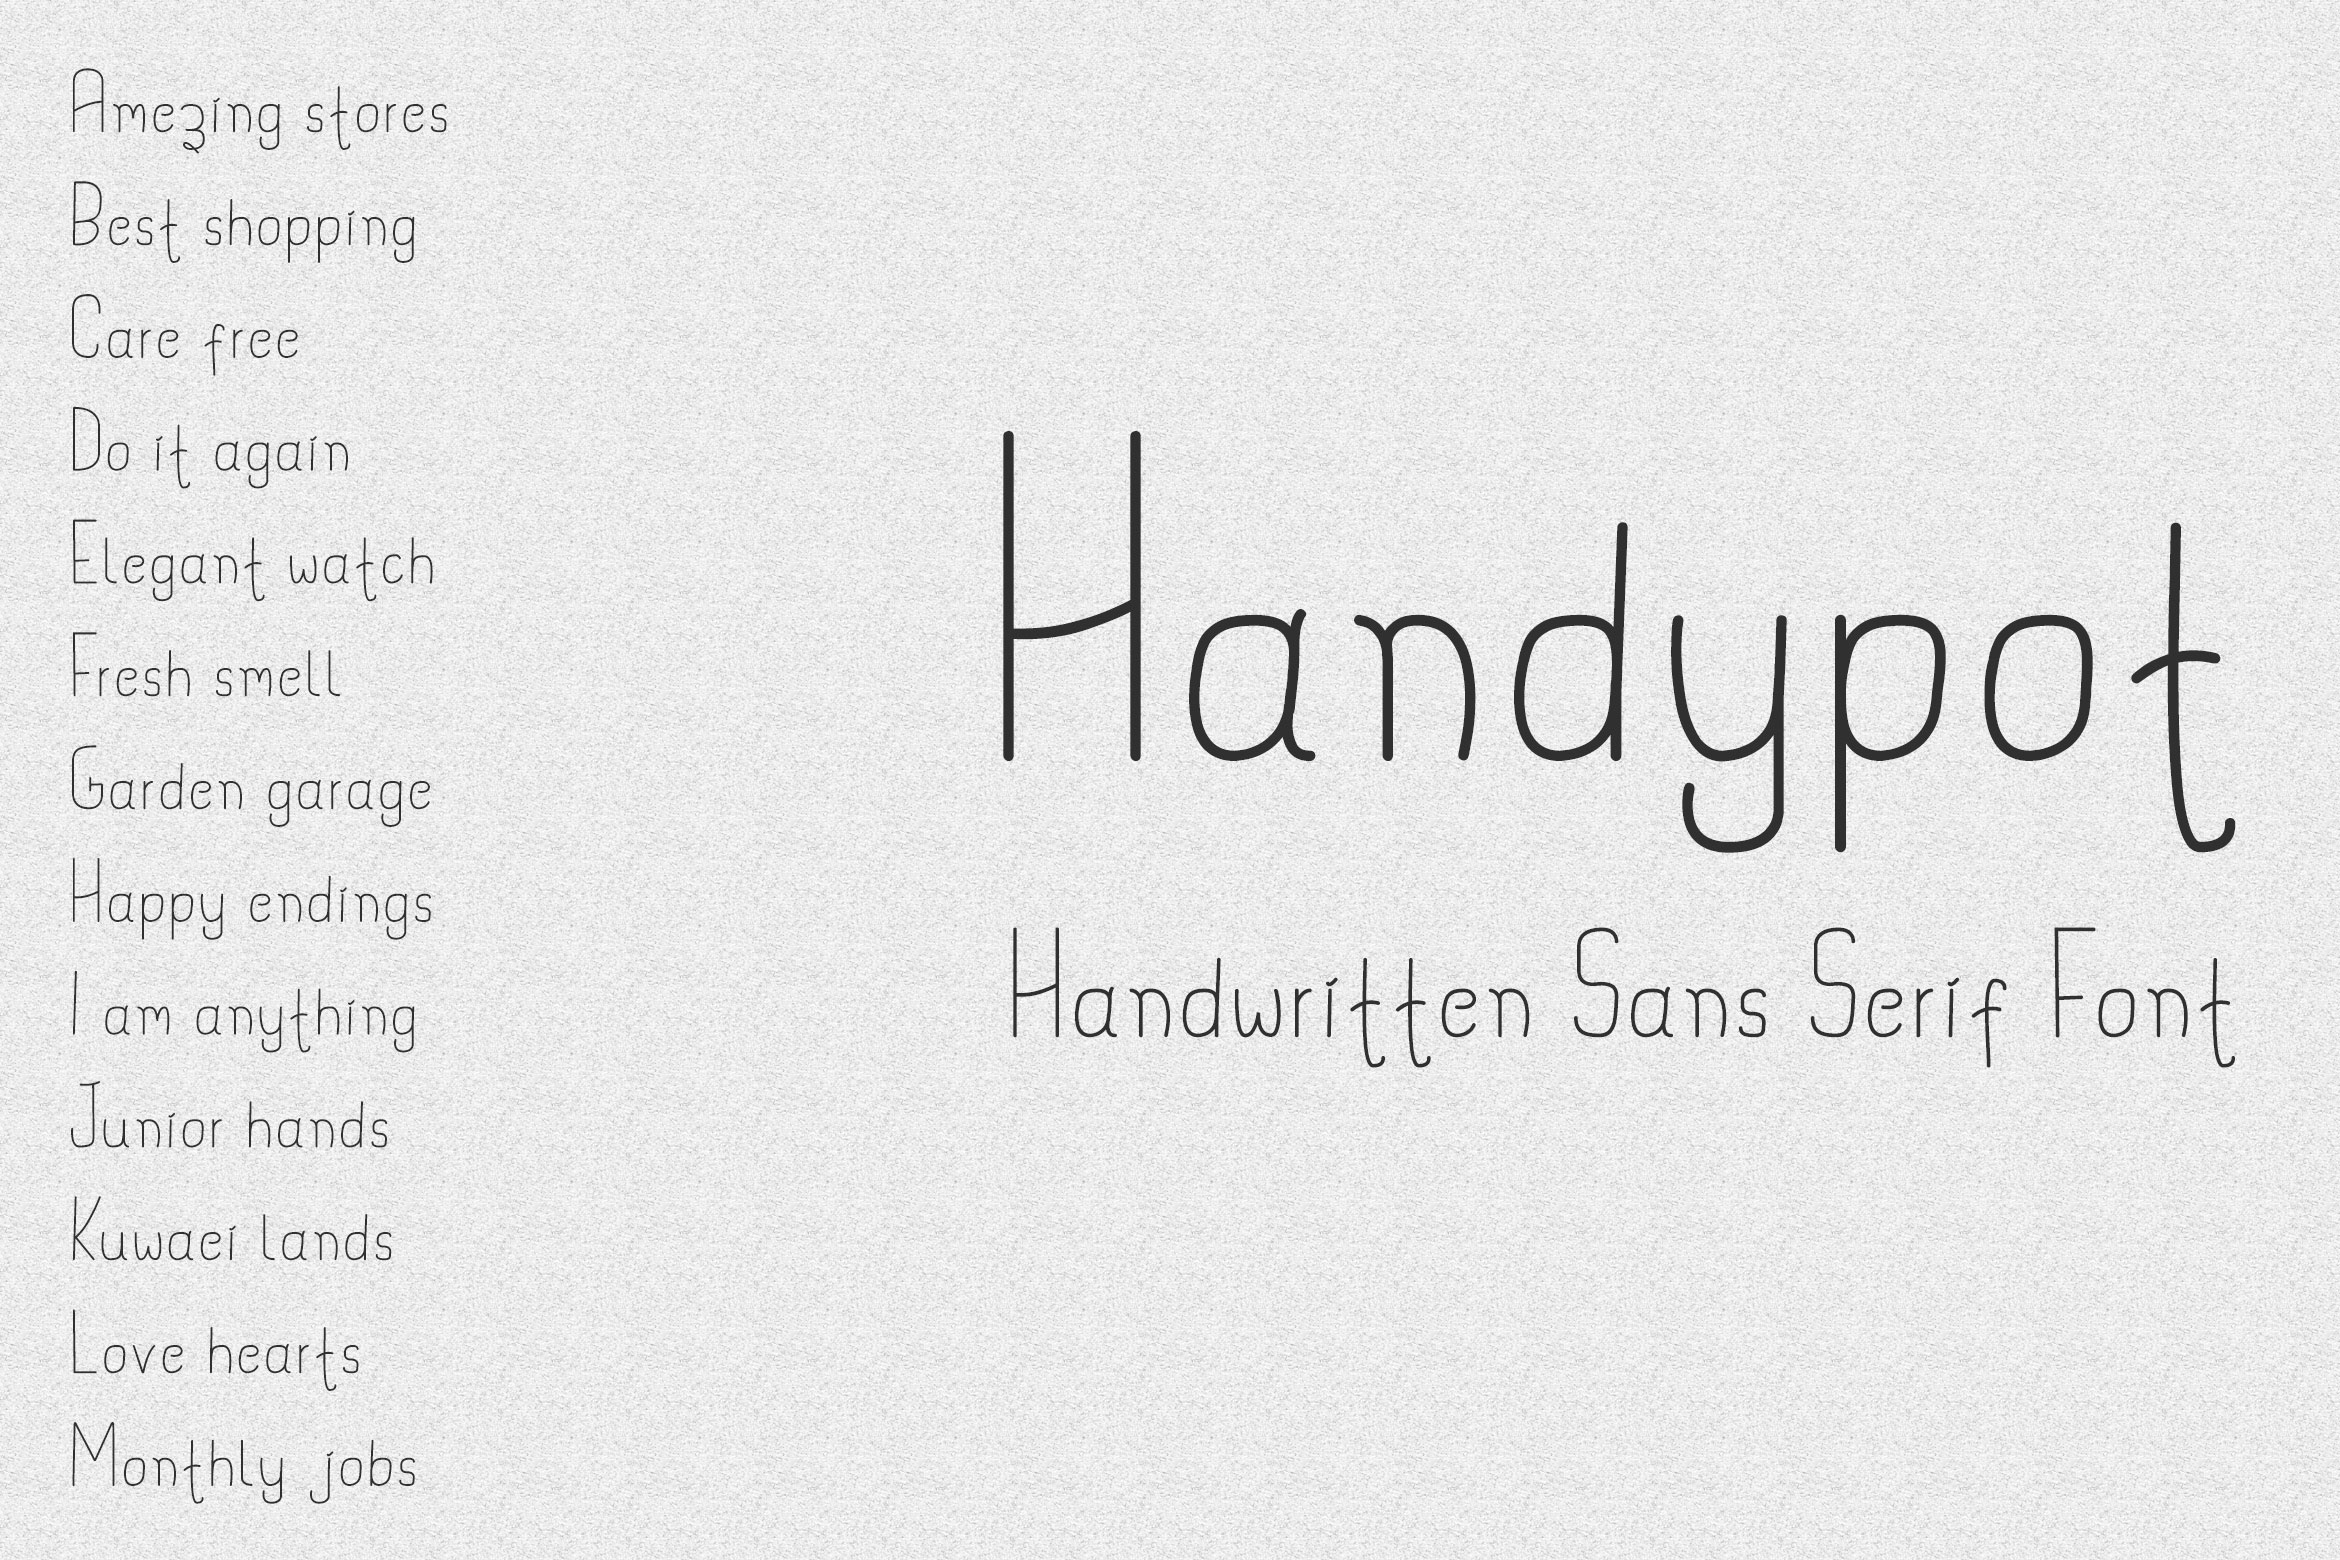 Handypot – Handwritten Sans Serif Font